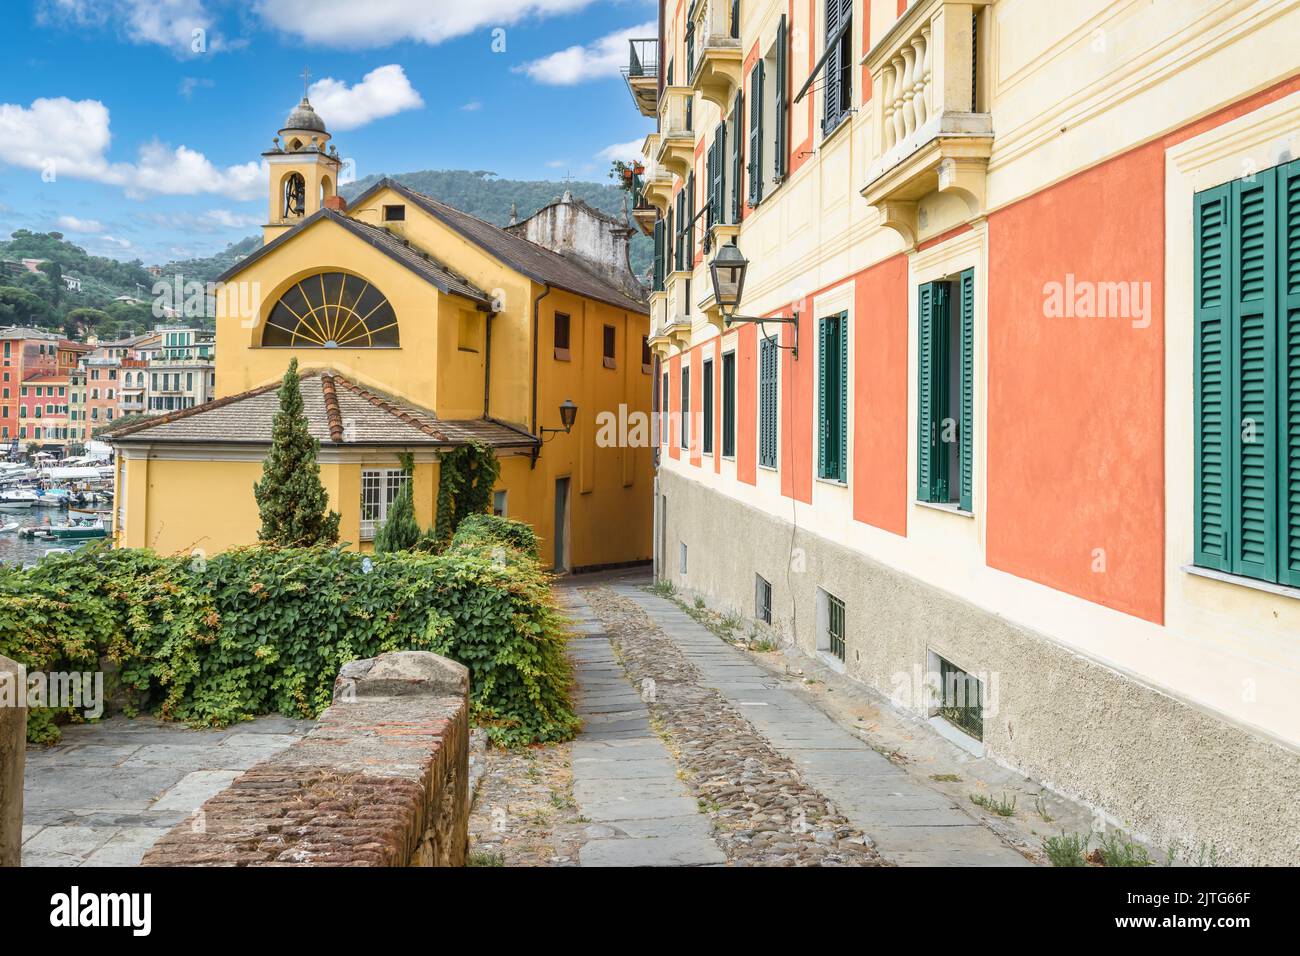 Calle estrecha entre coloridos edificios en el puerto de Santa Margherita, Ligure, Italia. Foto de stock